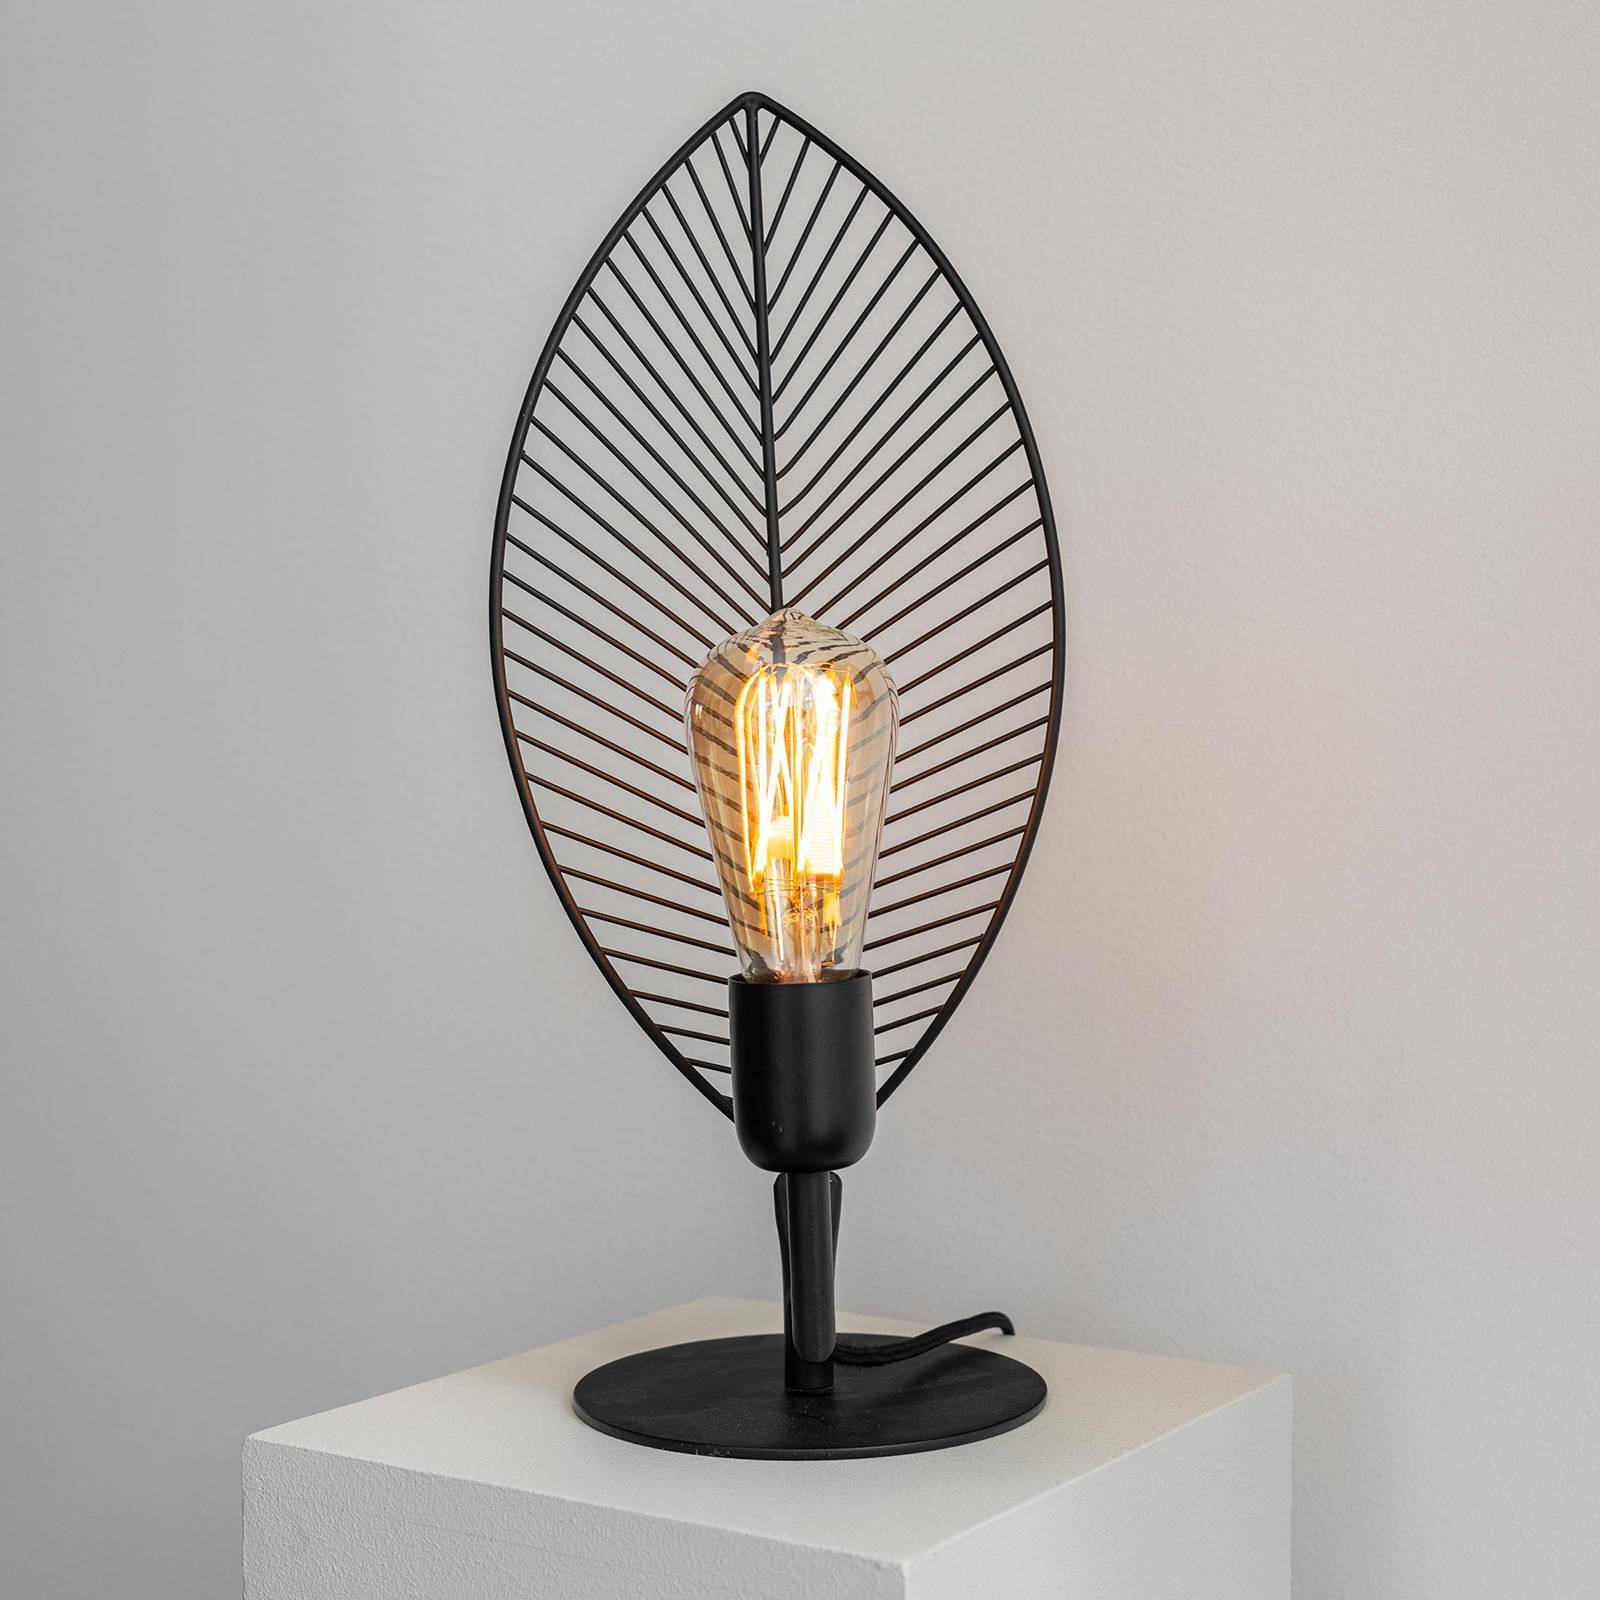 Image of PR Home Elm lampe à poser en forme de feuille, hauteur 42 cm 7330976116058